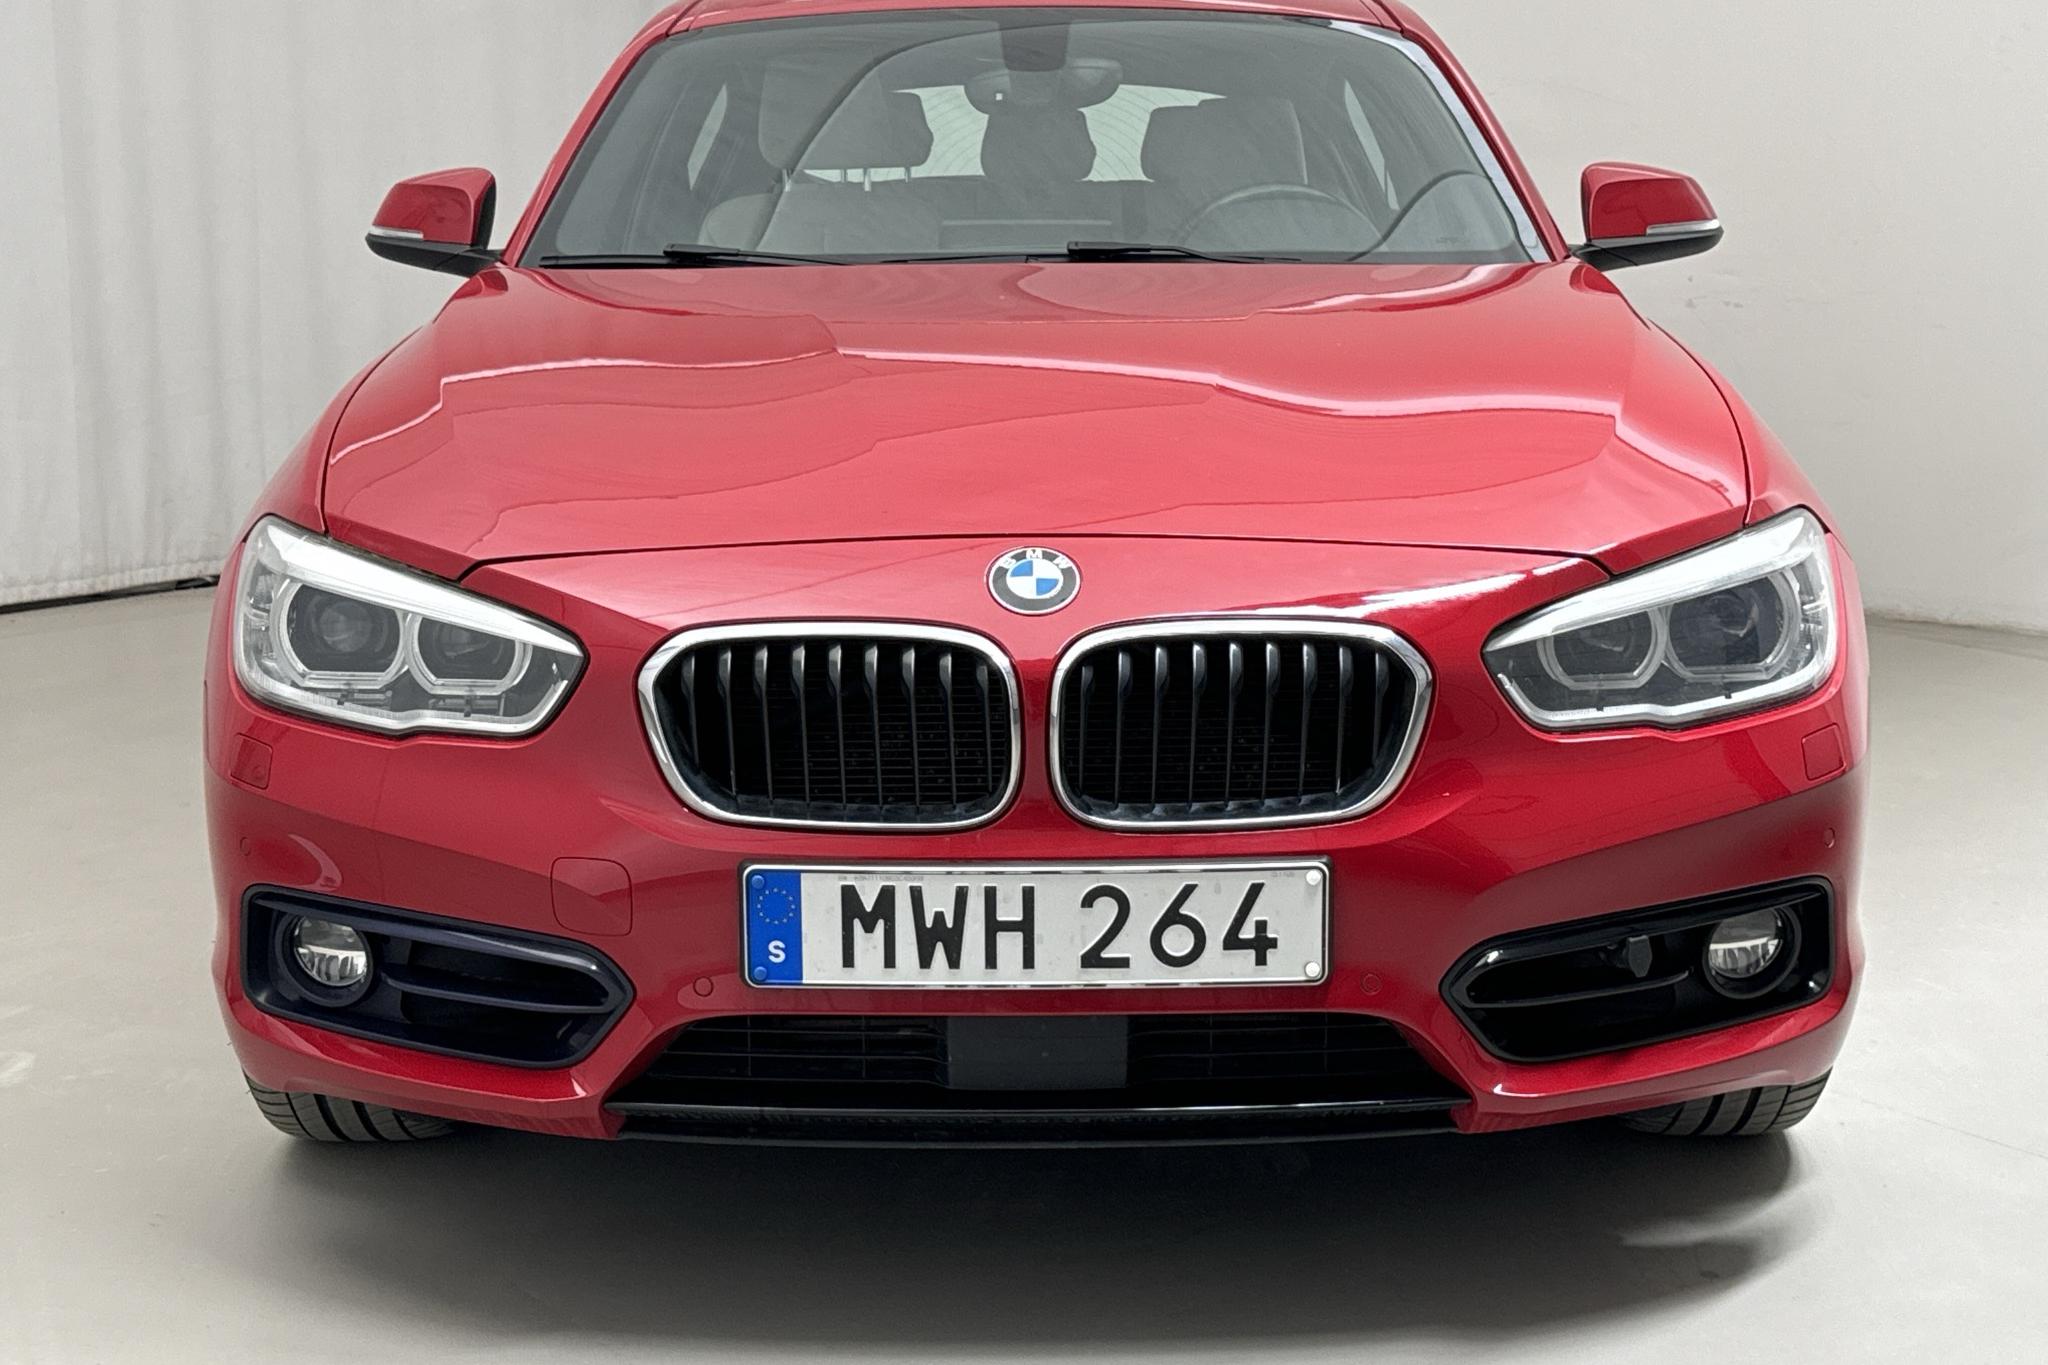 BMW 120d xDrive 5dr, F20 (190hk) - 119 120 km - Automatyczna - czerwony - 2016